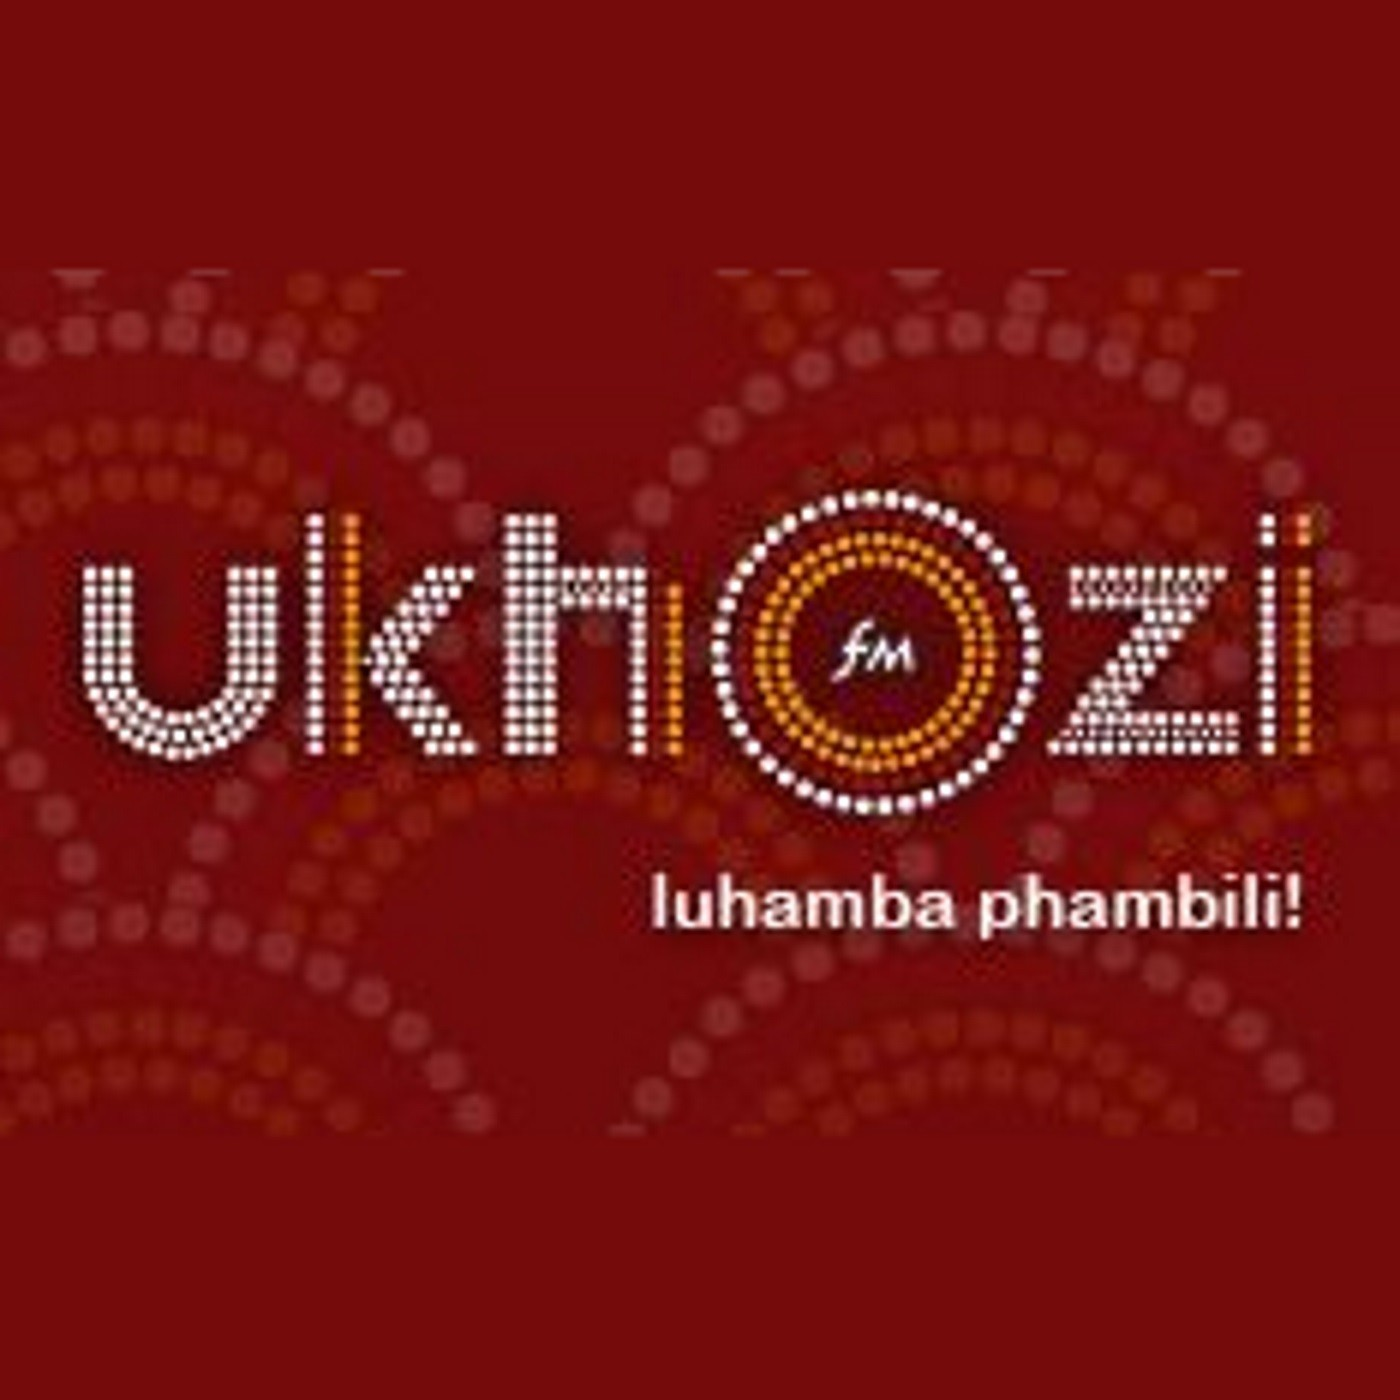 Khuthazeka no Sthembiso Zondo_Shintsha ukwenza ngo 2020